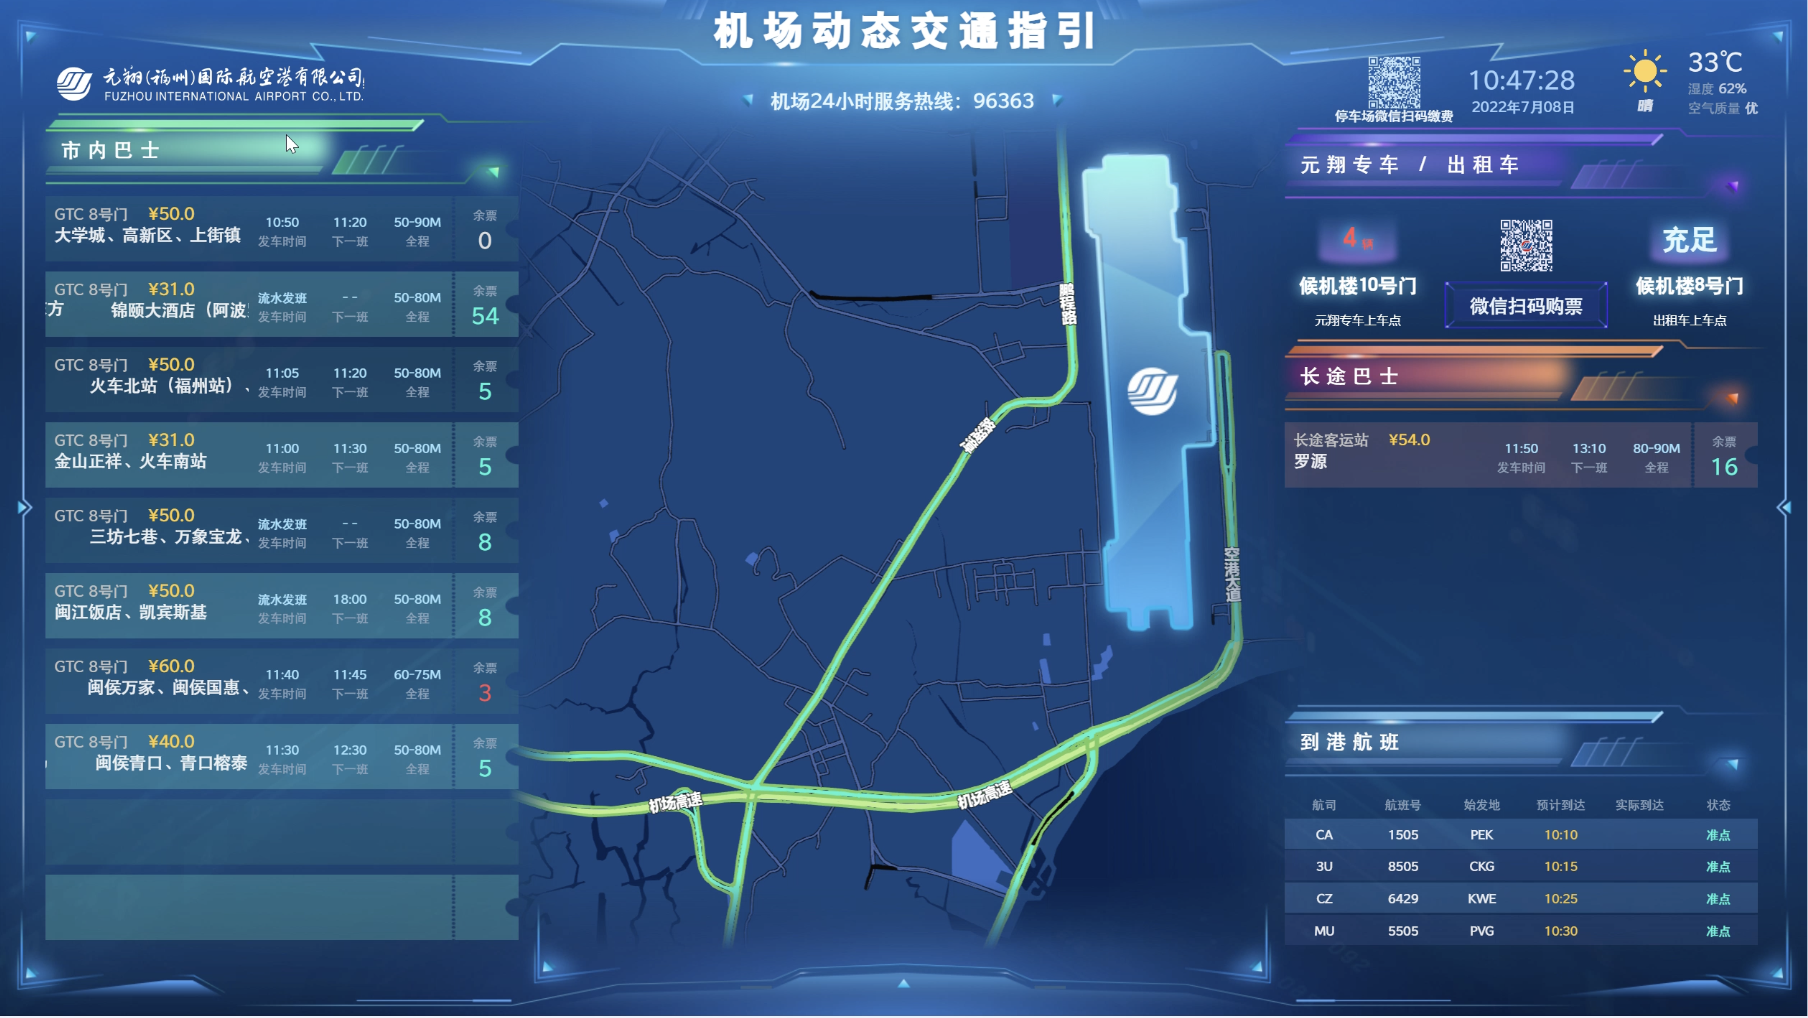 腾讯智慧交通亮相数字中国建设成果展机场gtc等方案获得关注